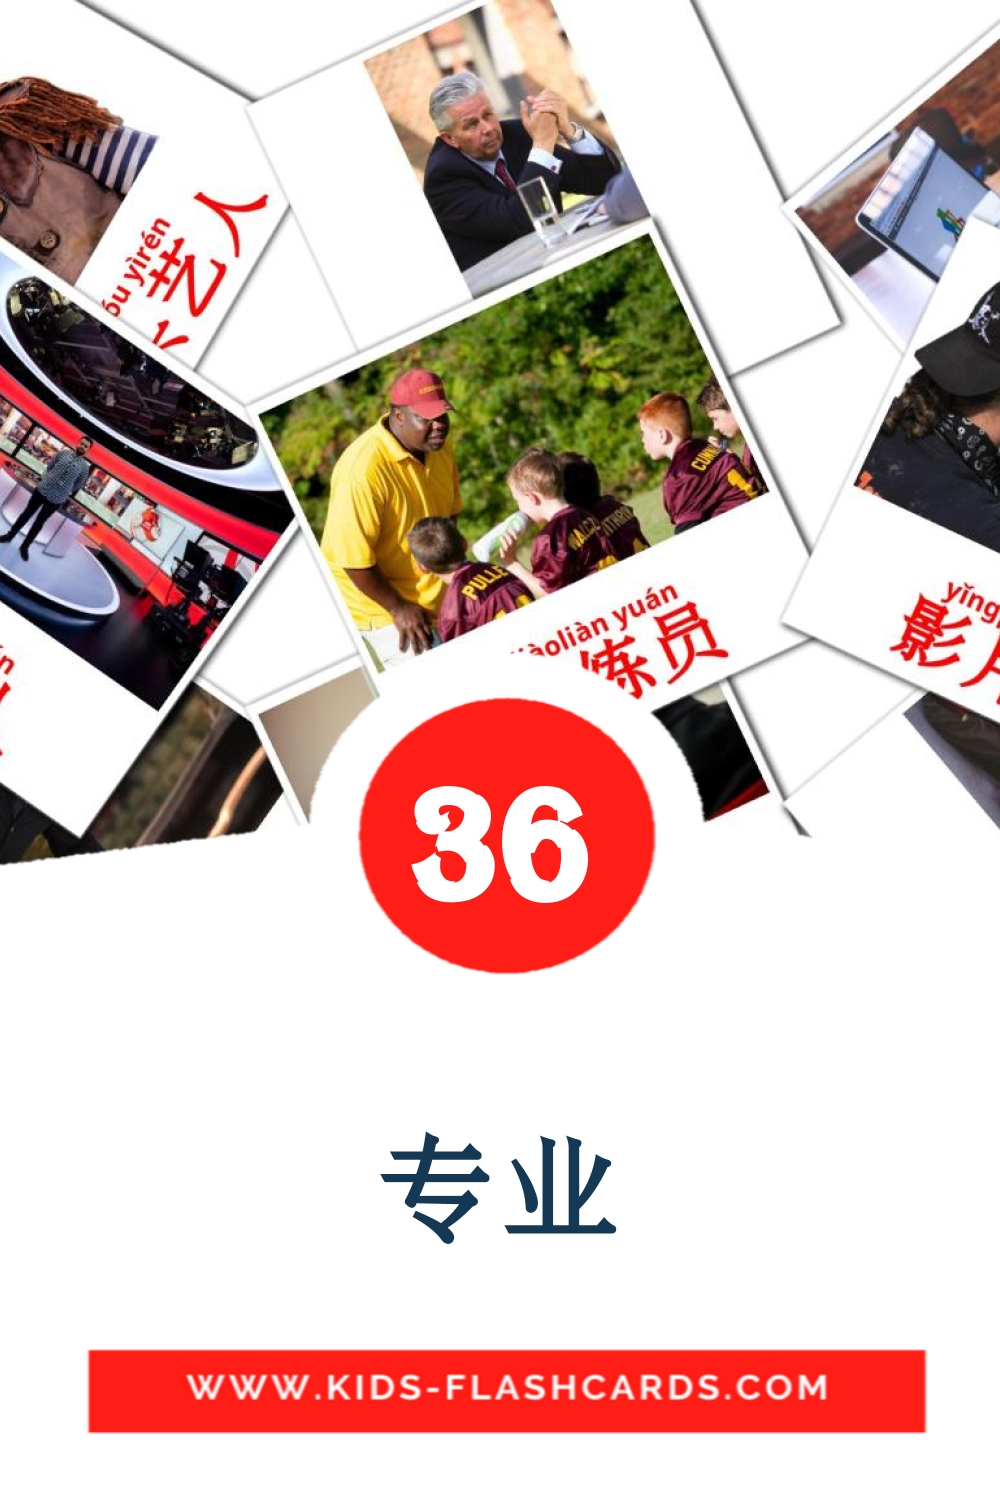 36 专业 fotokaarten voor kleuters in het Chinesisch(Vereinfacht)